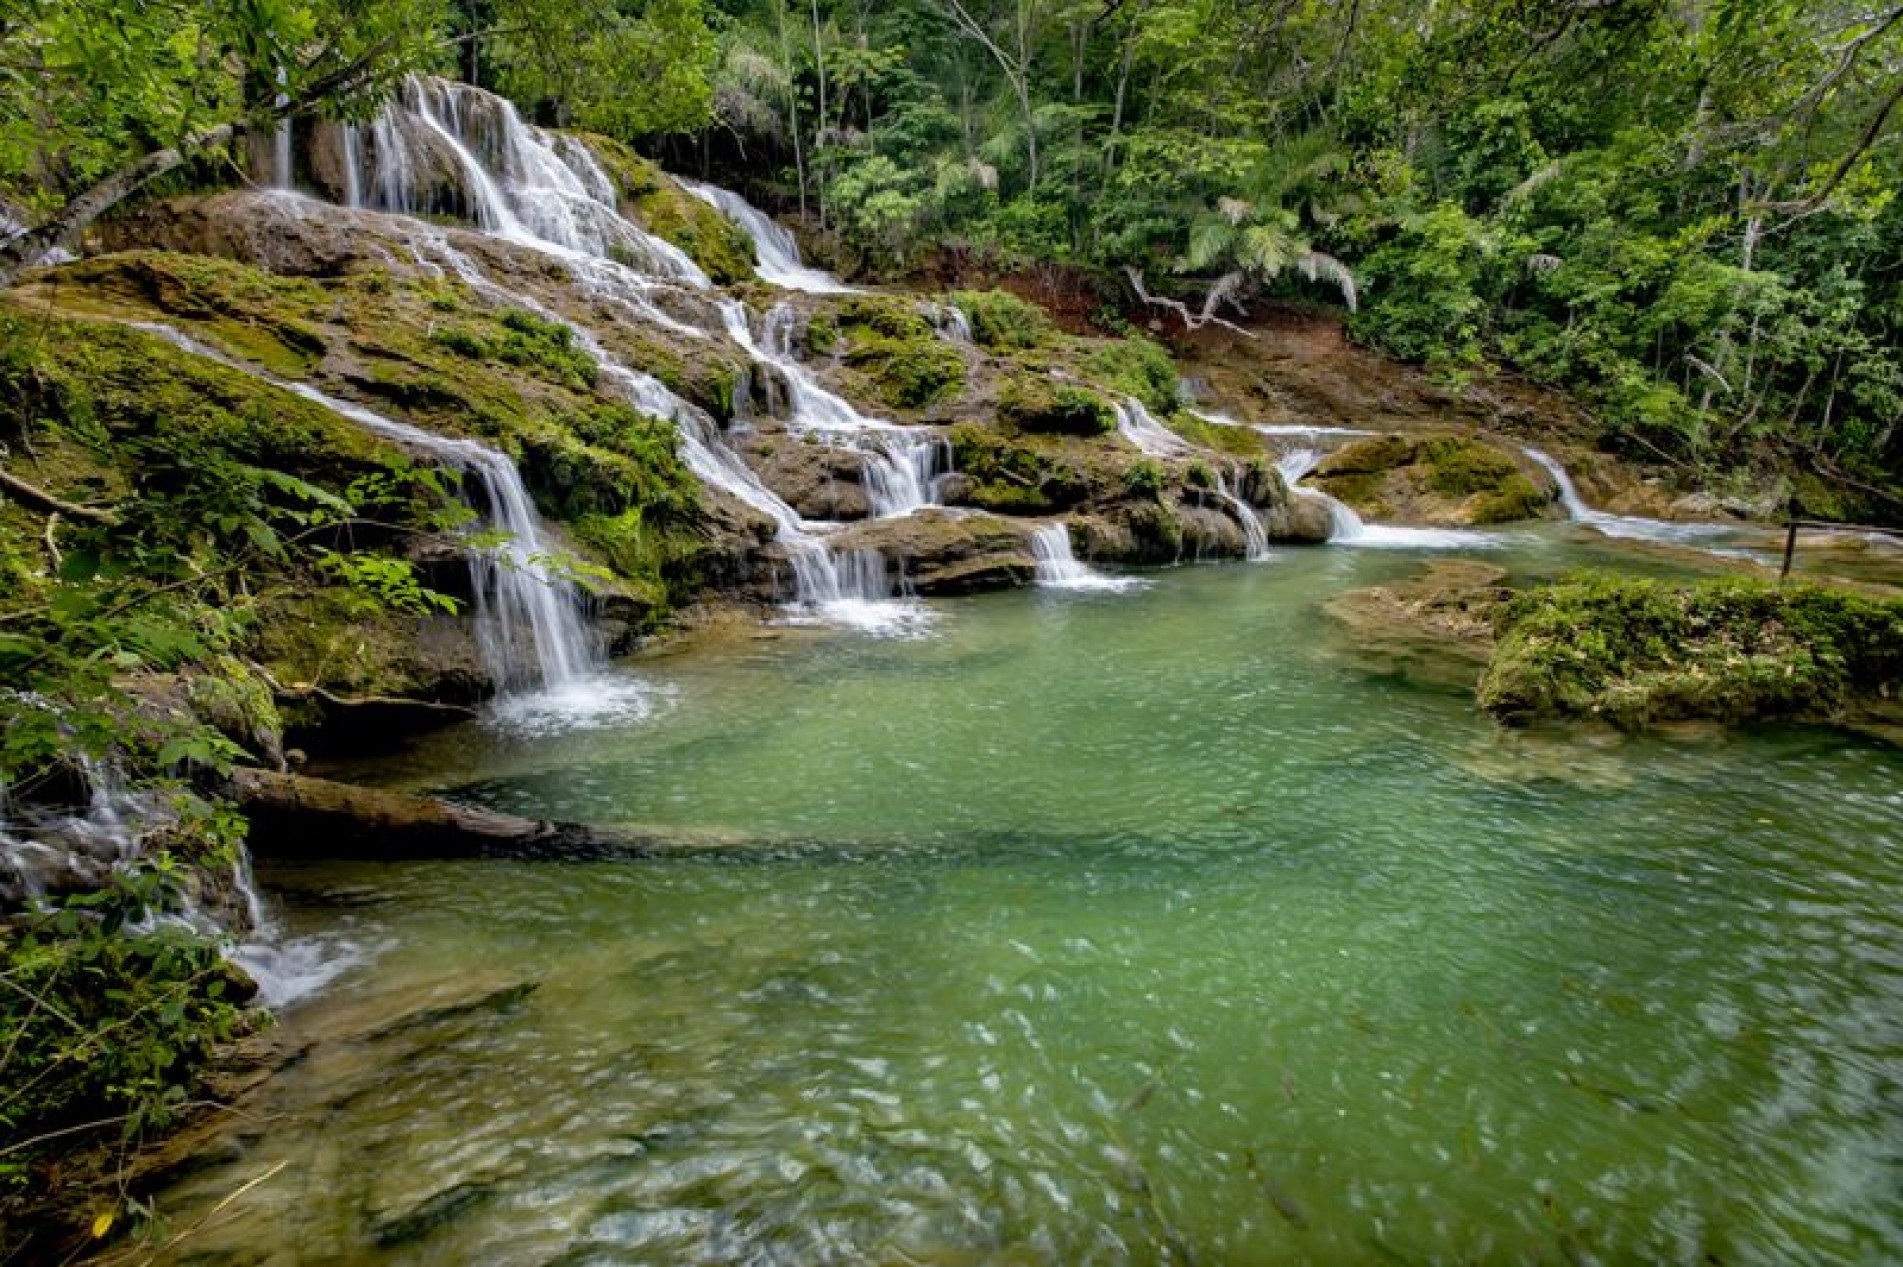 As 11 cachoeiras do rio do Peixe formam uma das diversas paisagens paradisíacas de Bonito.